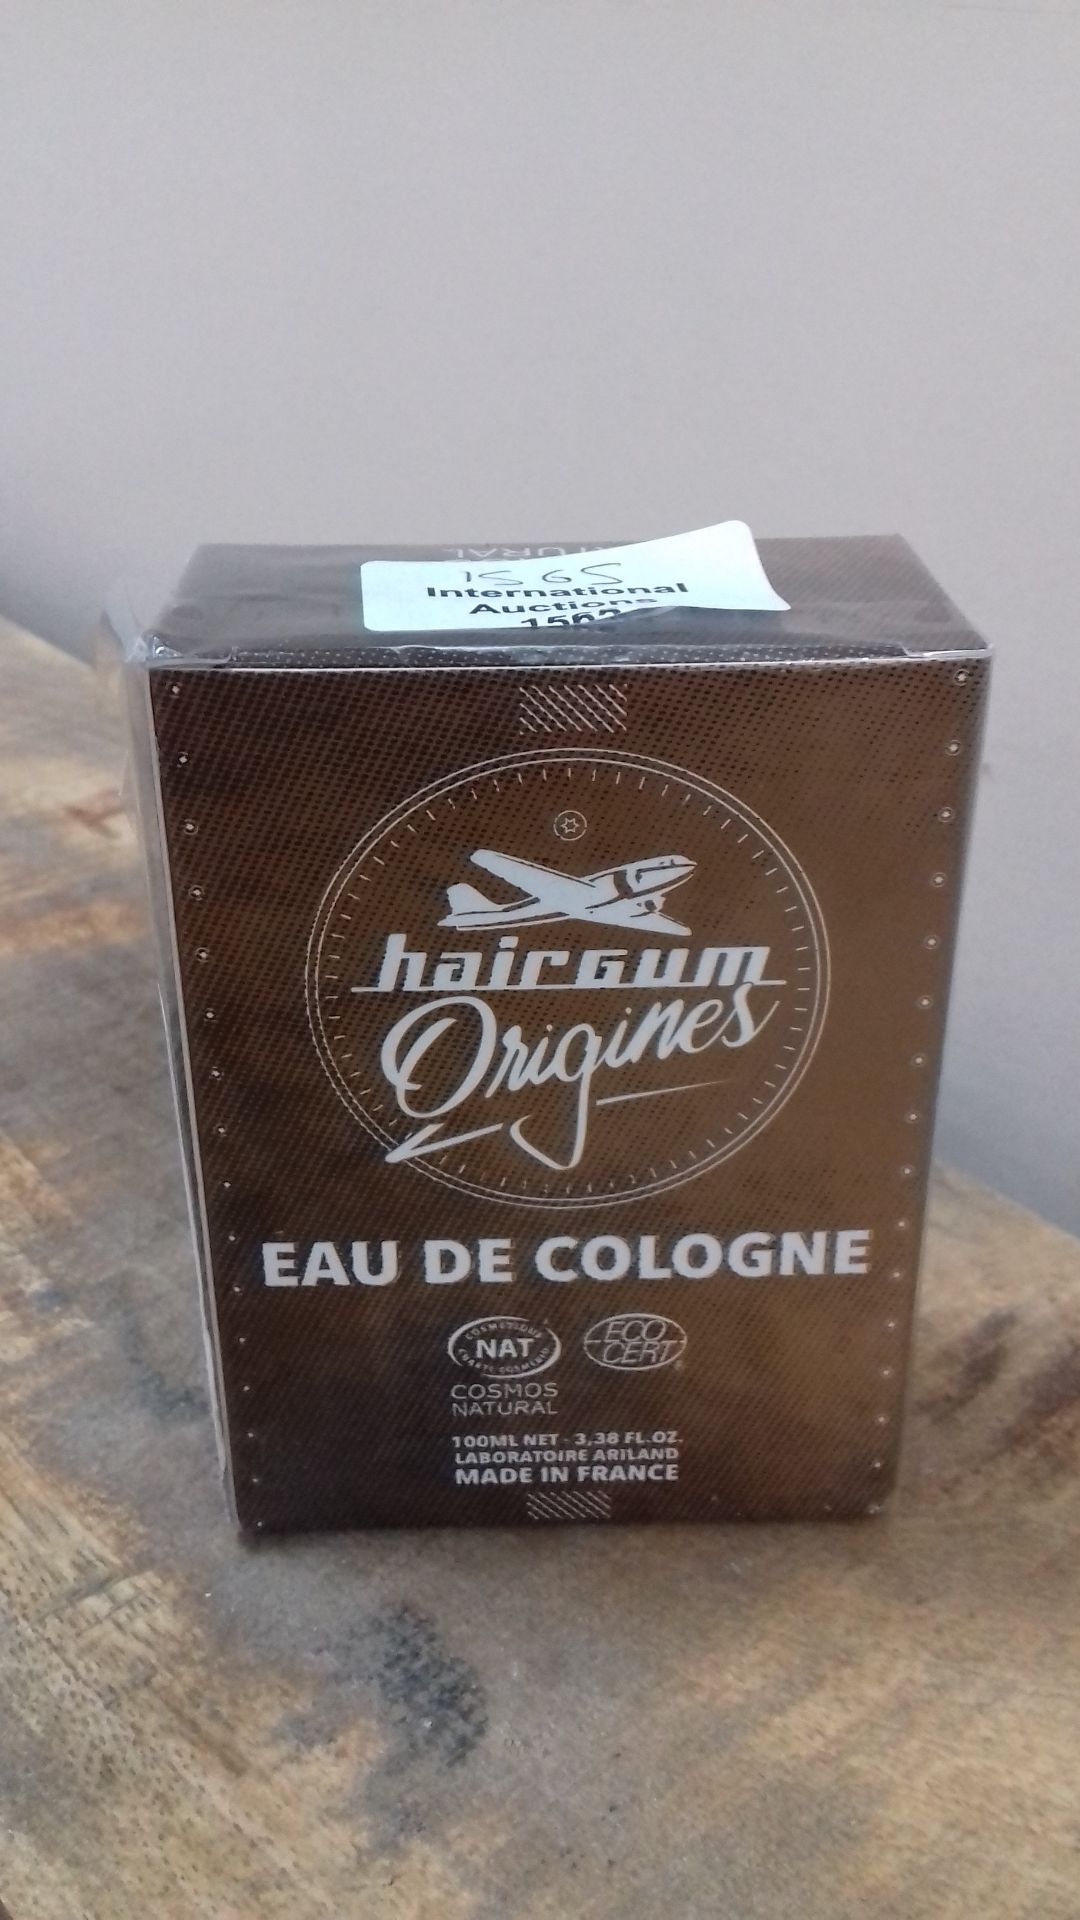 RRP £28.21 Hairgum Origines Eau De Cologne - Natural Certified 100Ml - Image 2 of 2